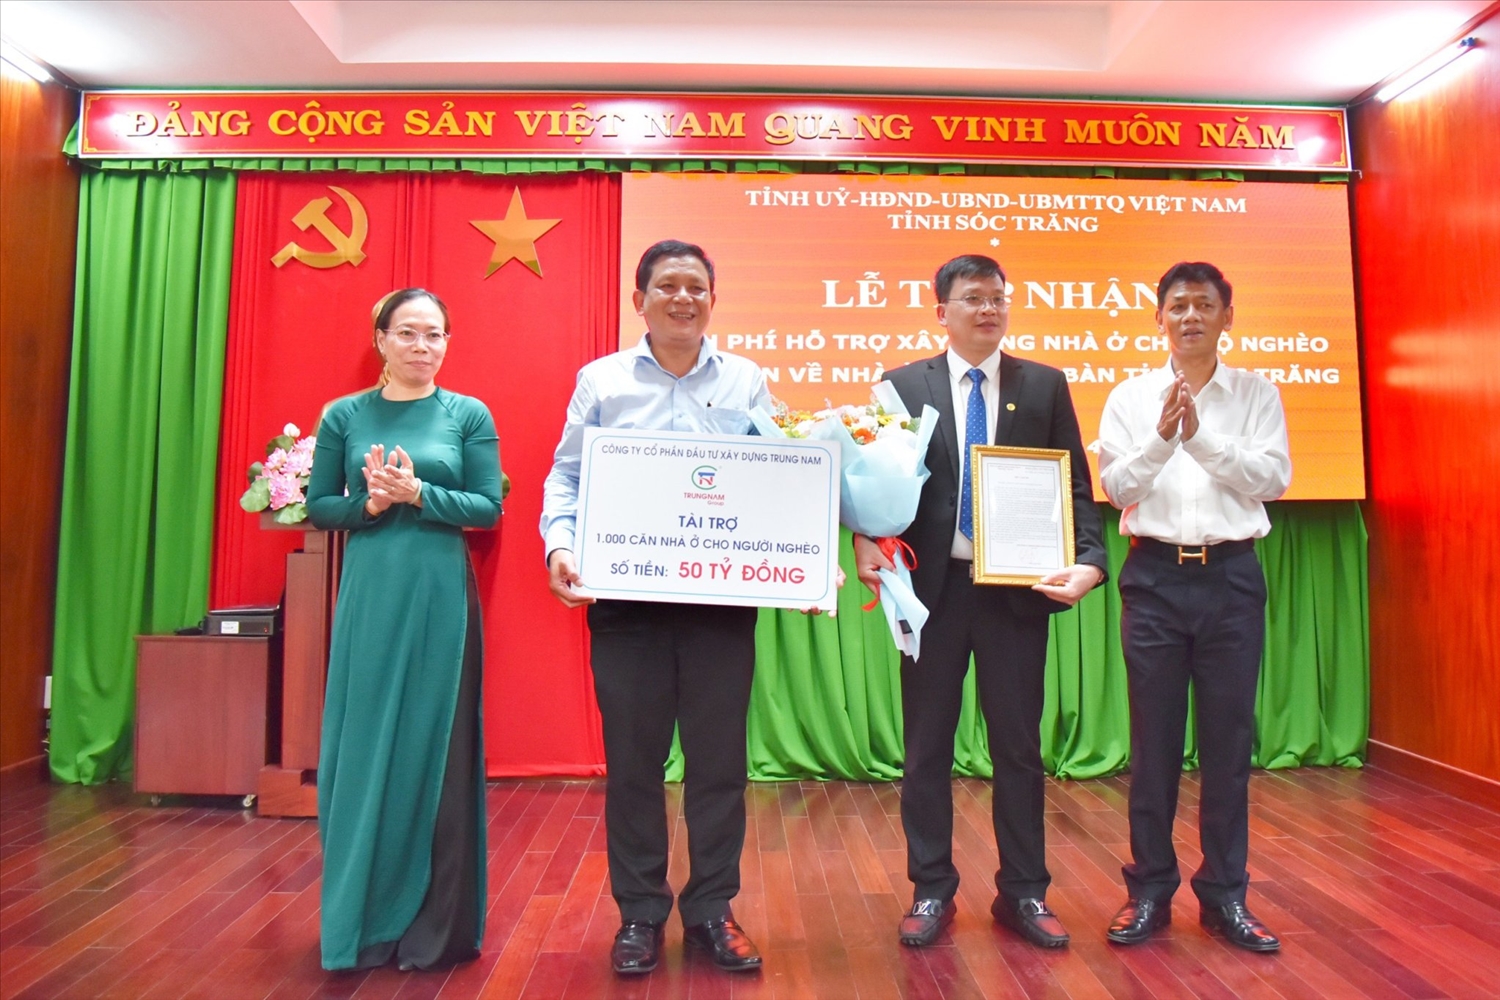 Trungnam Group đóng góp kinh phí 50 tỷ đồng cùng tỉnh Sóc Trăng xây dựng nhà Đại đoàn kết cho hộ nghèo trên toàn tỉnh